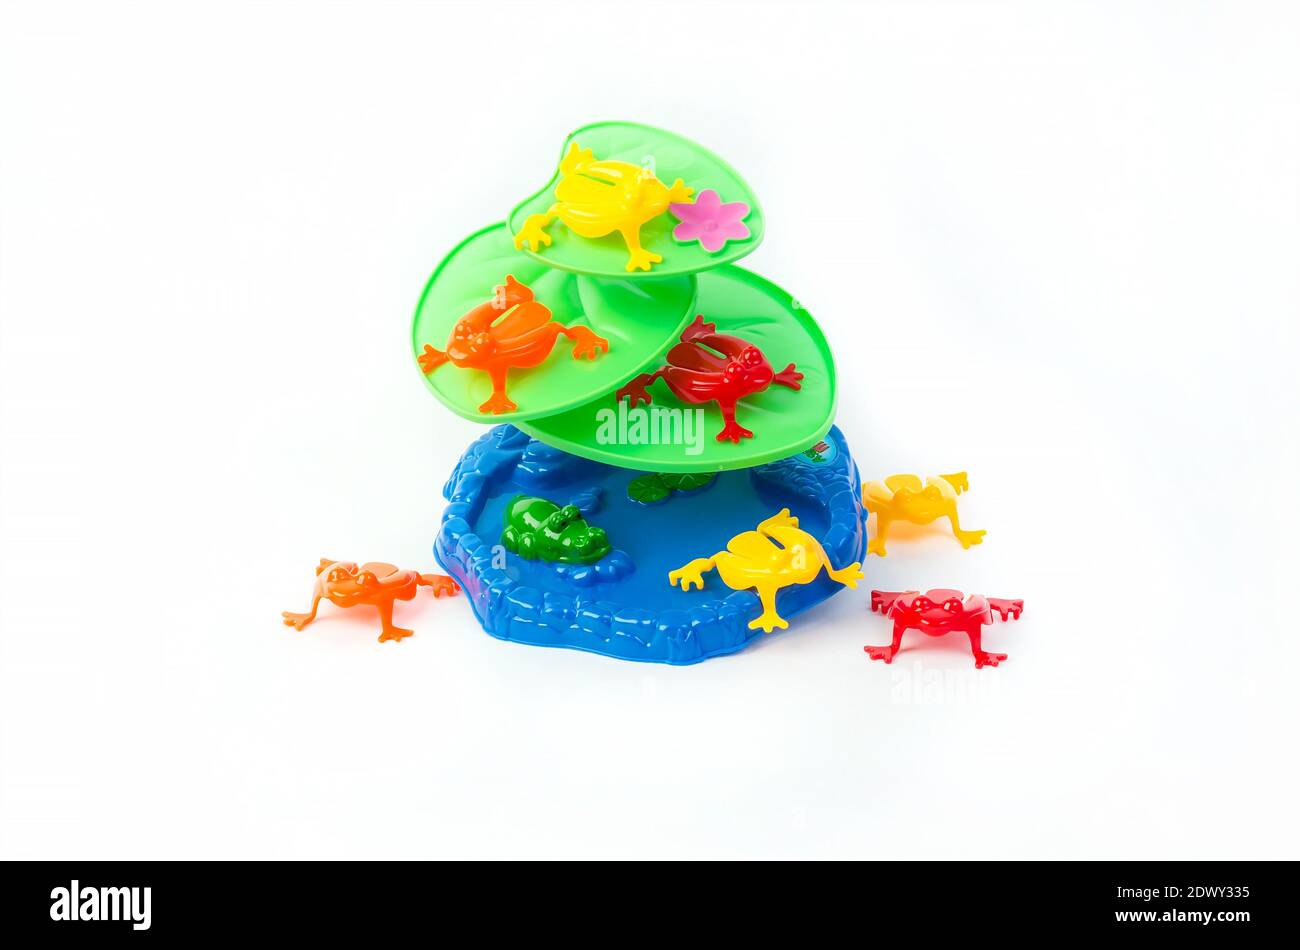 Kinder pädagogisches unterhaltsames Spielzeug für die Entwicklung der motorischen Fähigkeiten, auf weißem Hintergrund. Stockfoto